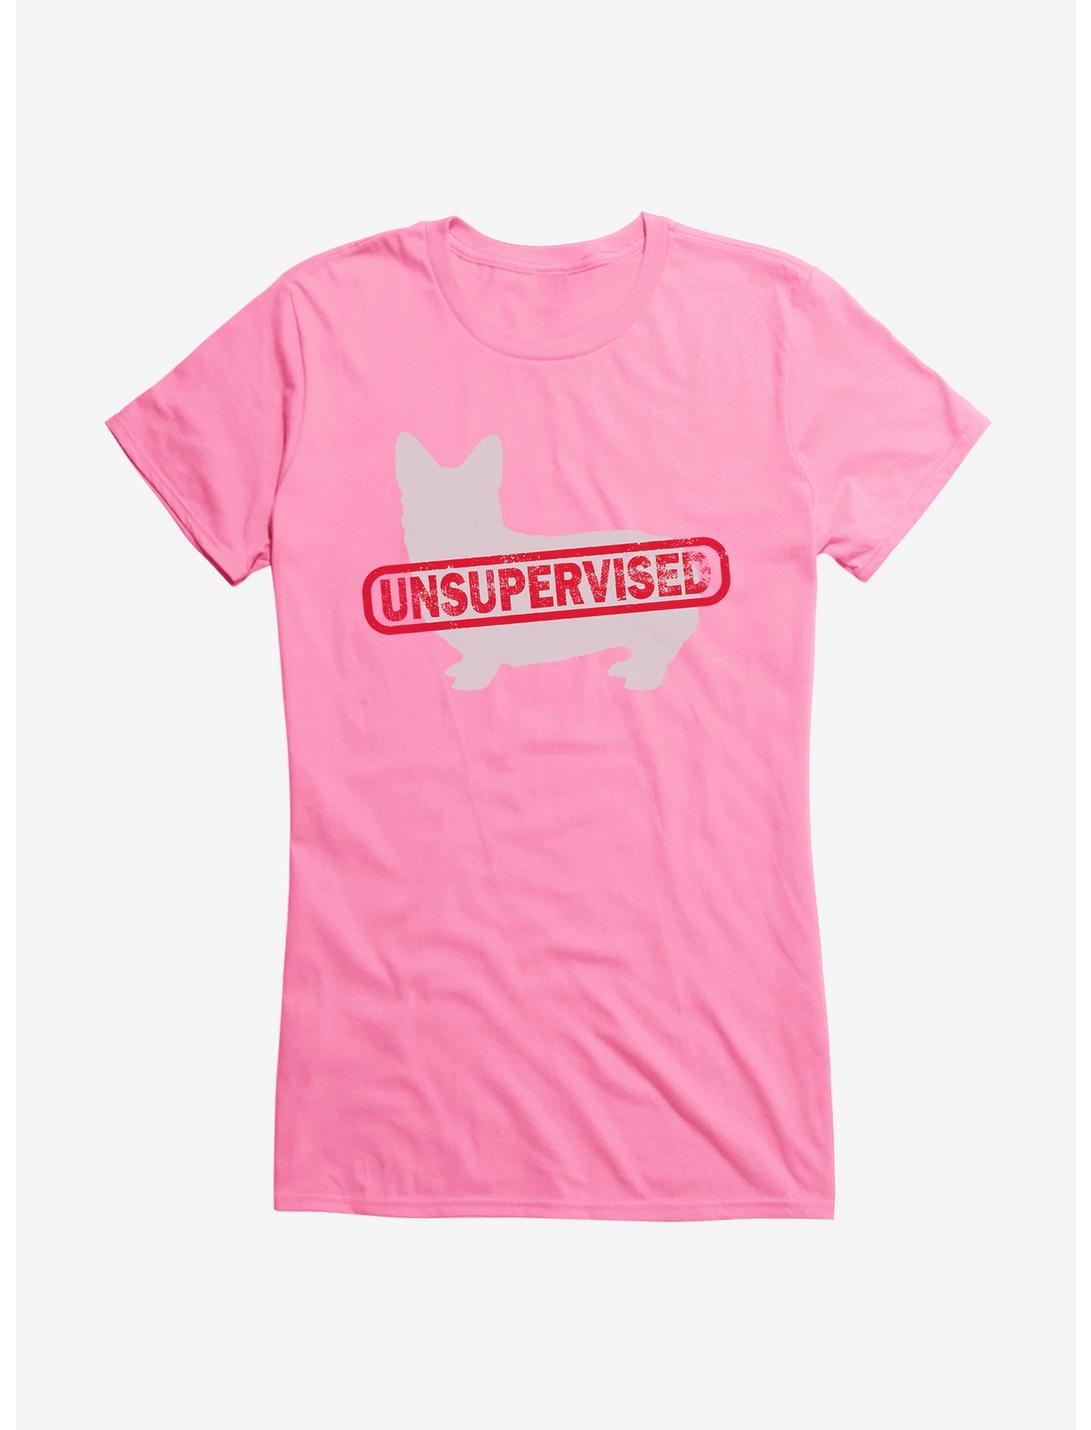 iCreate Unsupervised Corgi Girls T-Shirt, , hi-res